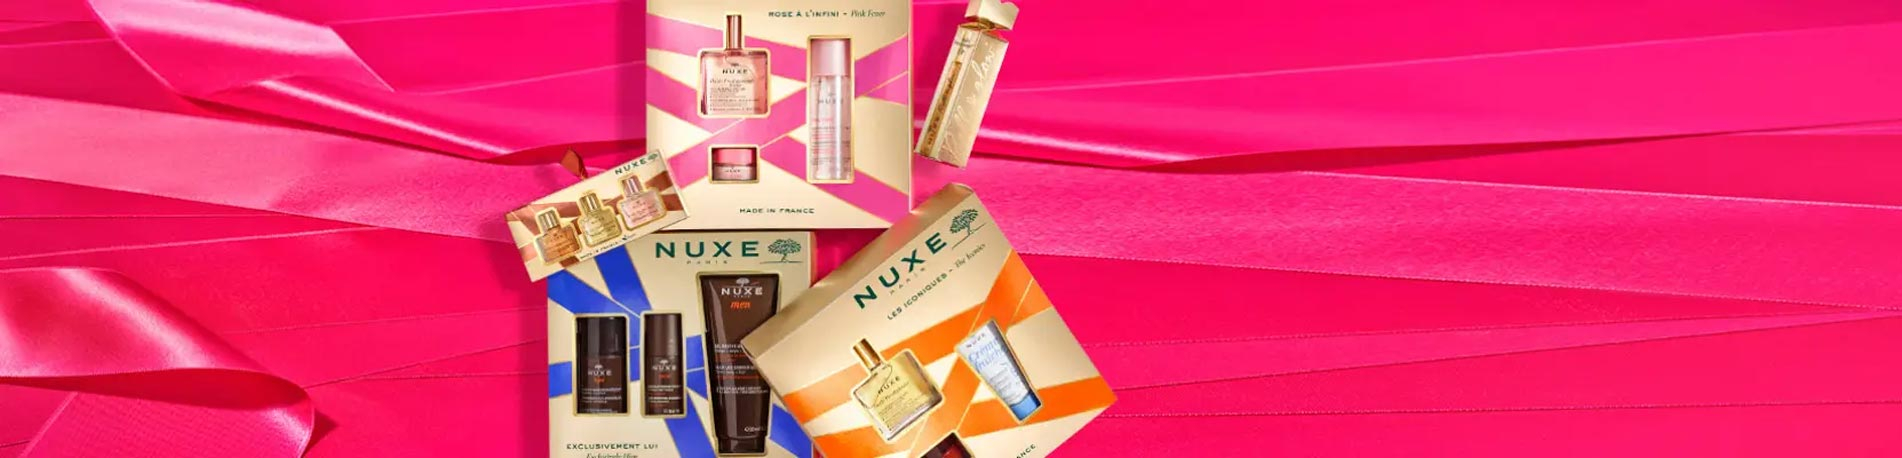 Nuxe Coffret Les Iconiques Noël 2023 - Pharmacie en ligne